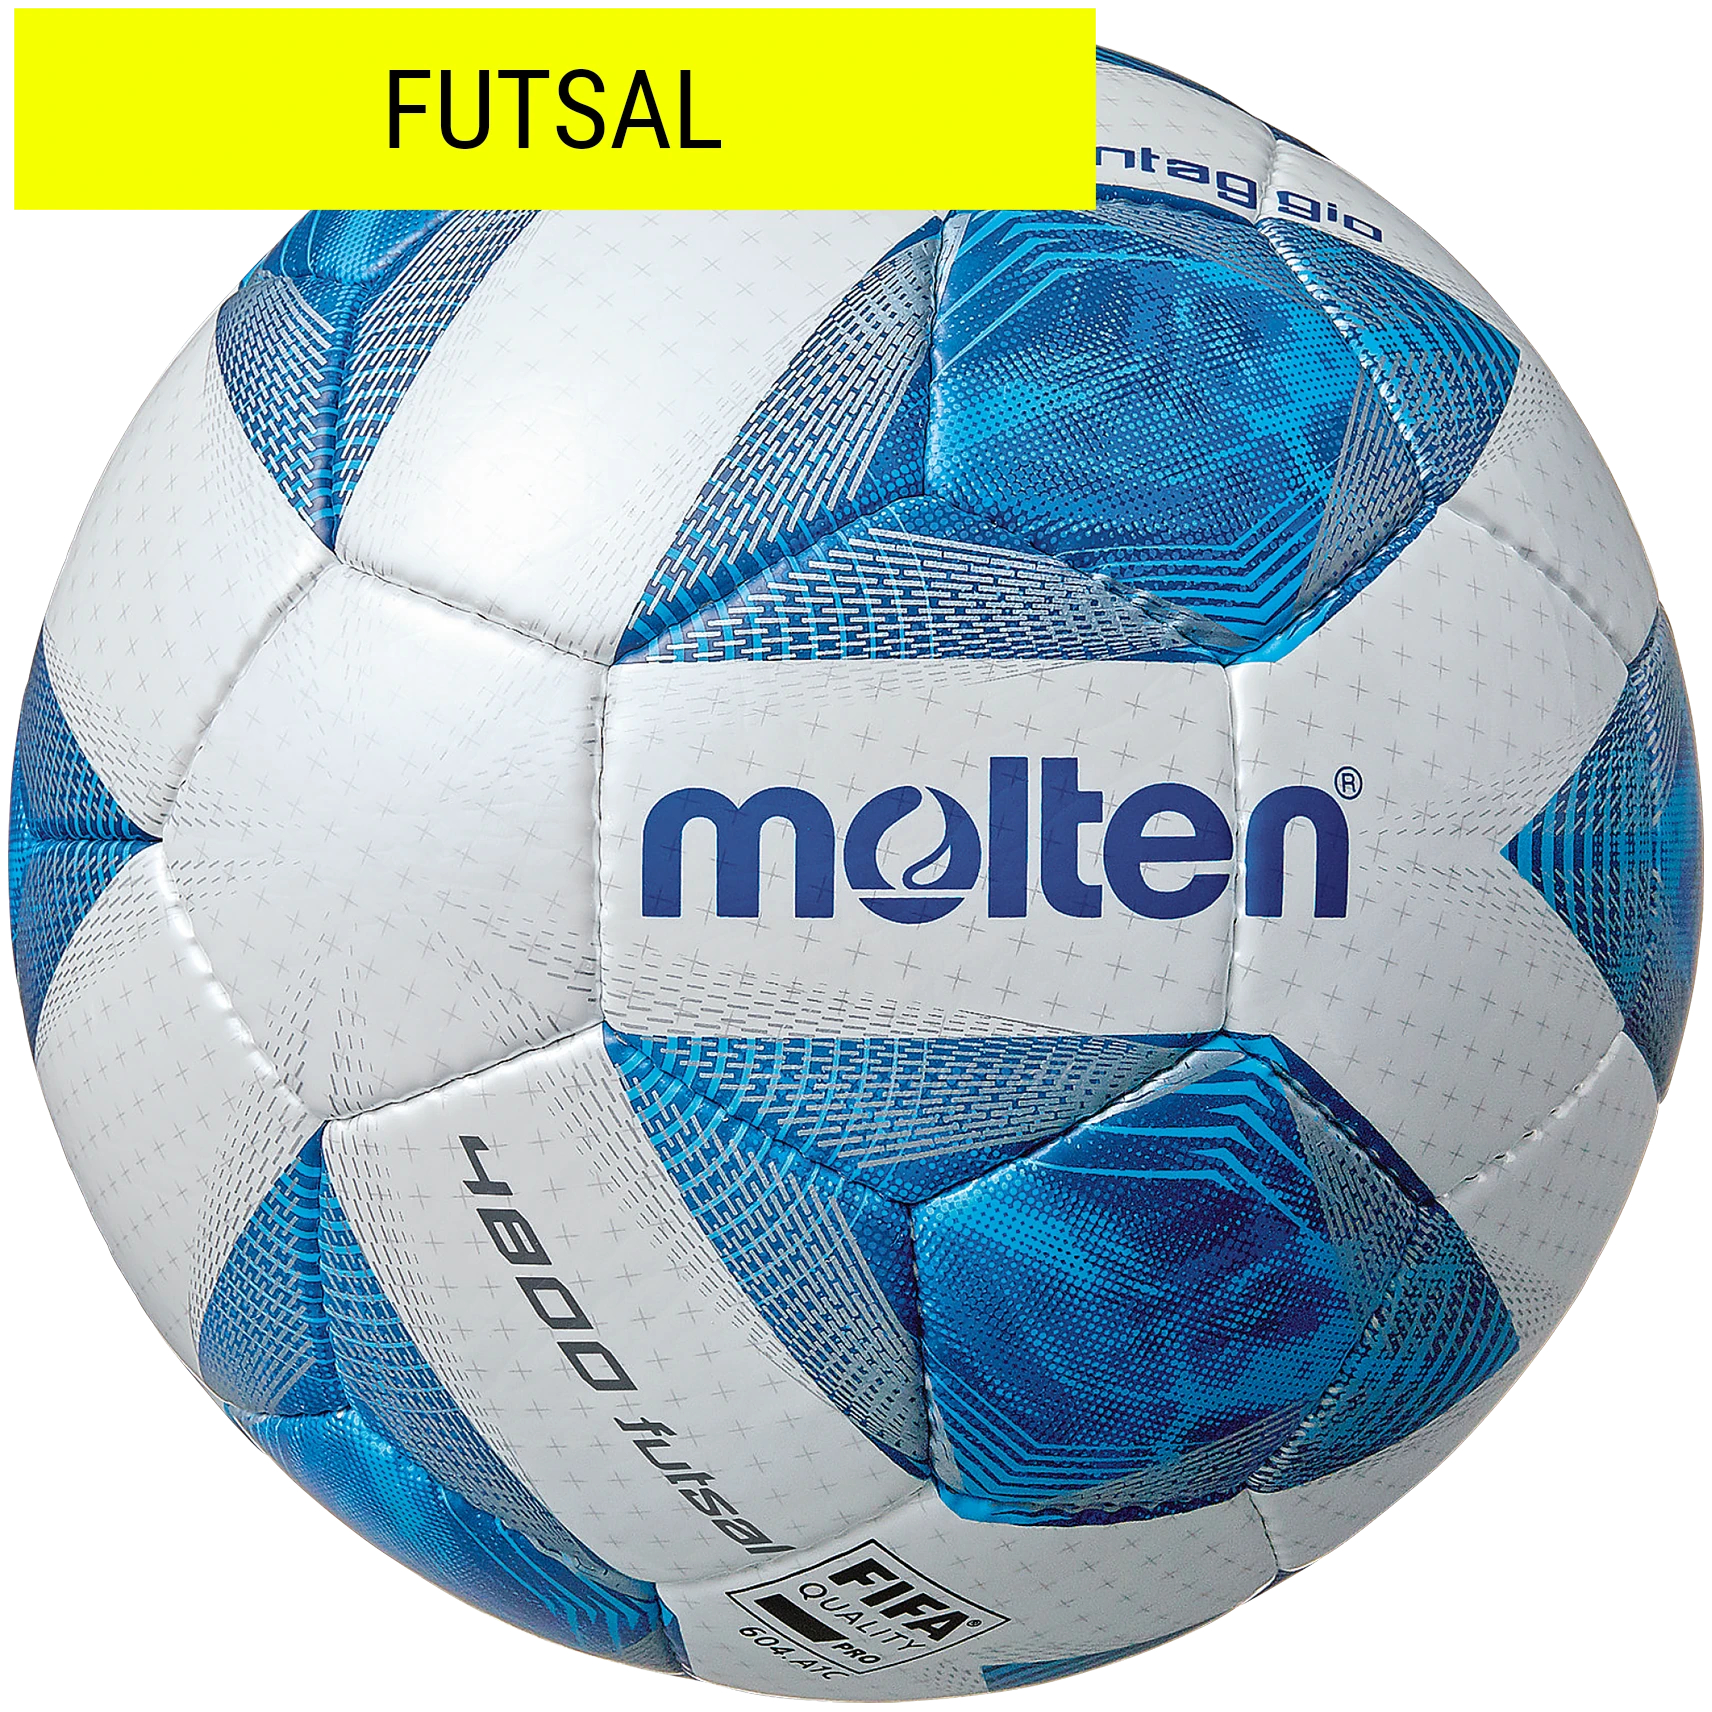 Molten- Futsal